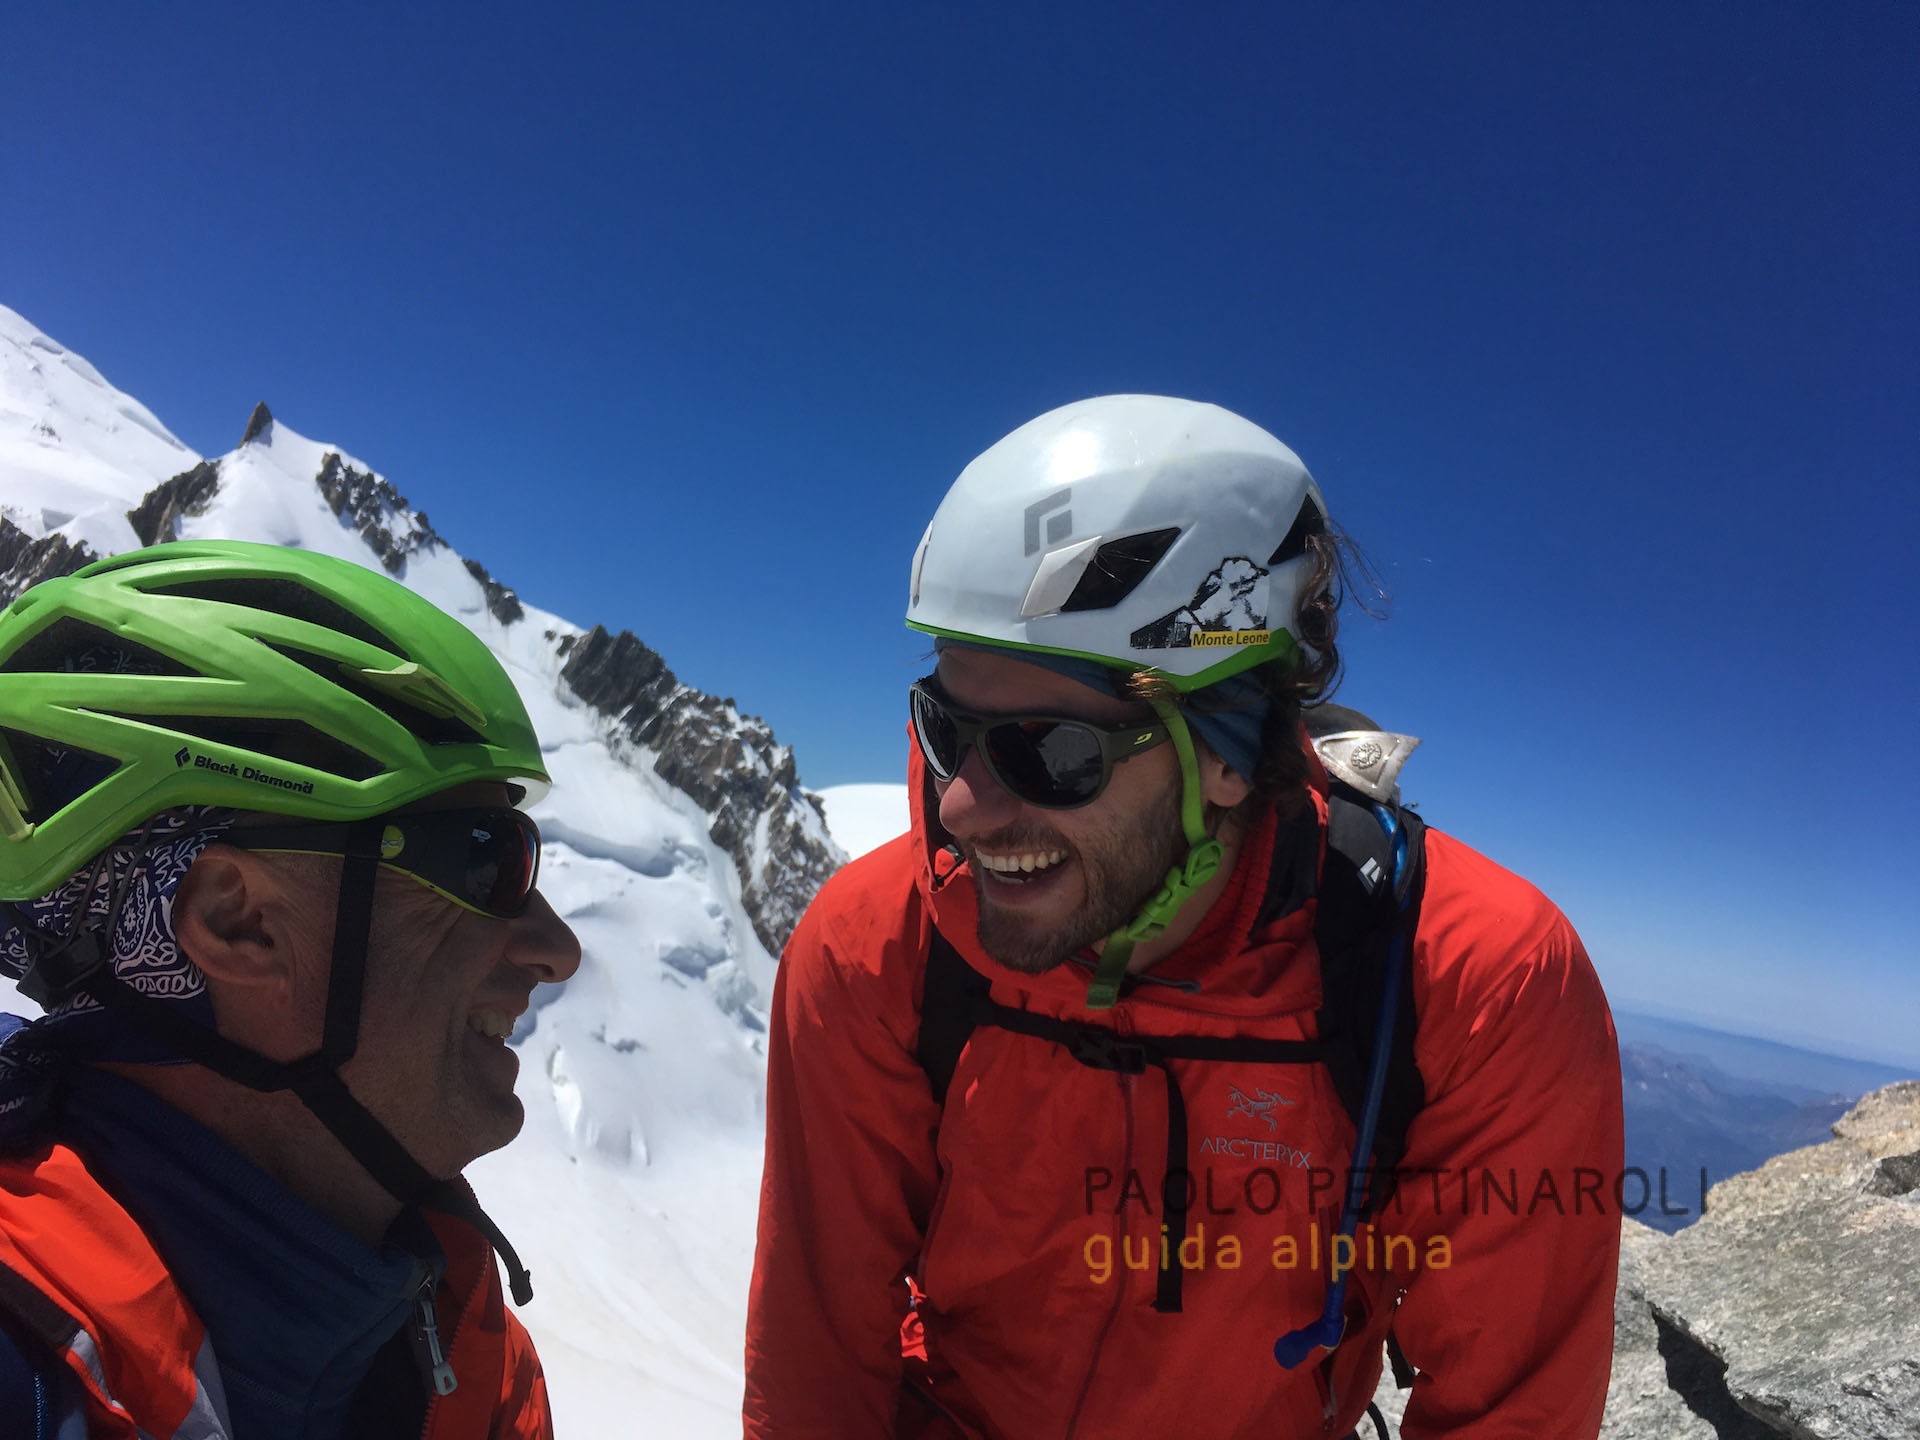 aiguille du diable - 5 di 5 - alpinismo_paolo pettinaroli guida alpina